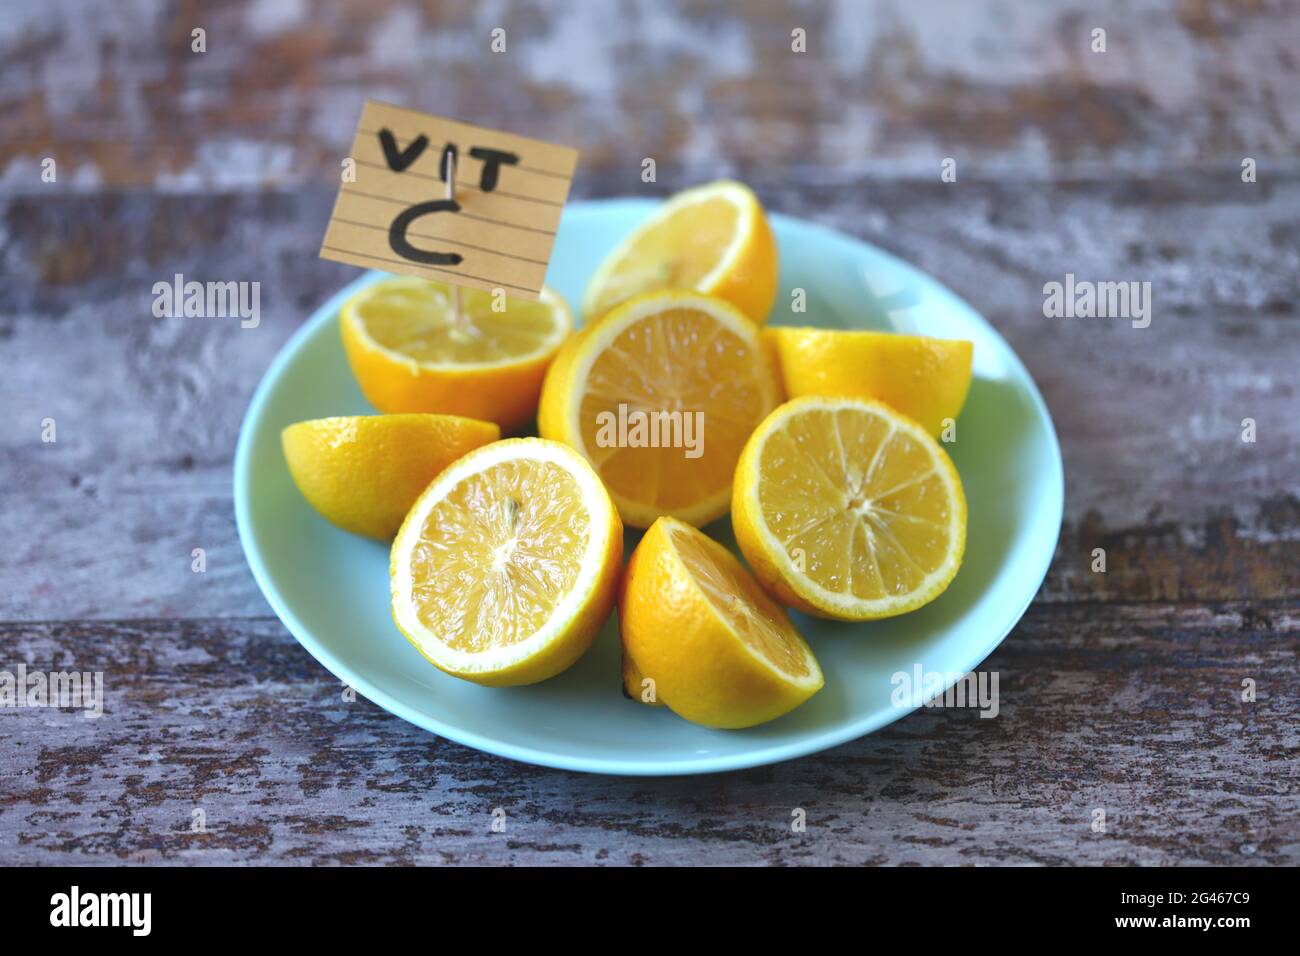 Noter avec l'inscription vit C dans une assiette avec des citrons. Les citrons comme source de vitamine C concept. Banque D'Images